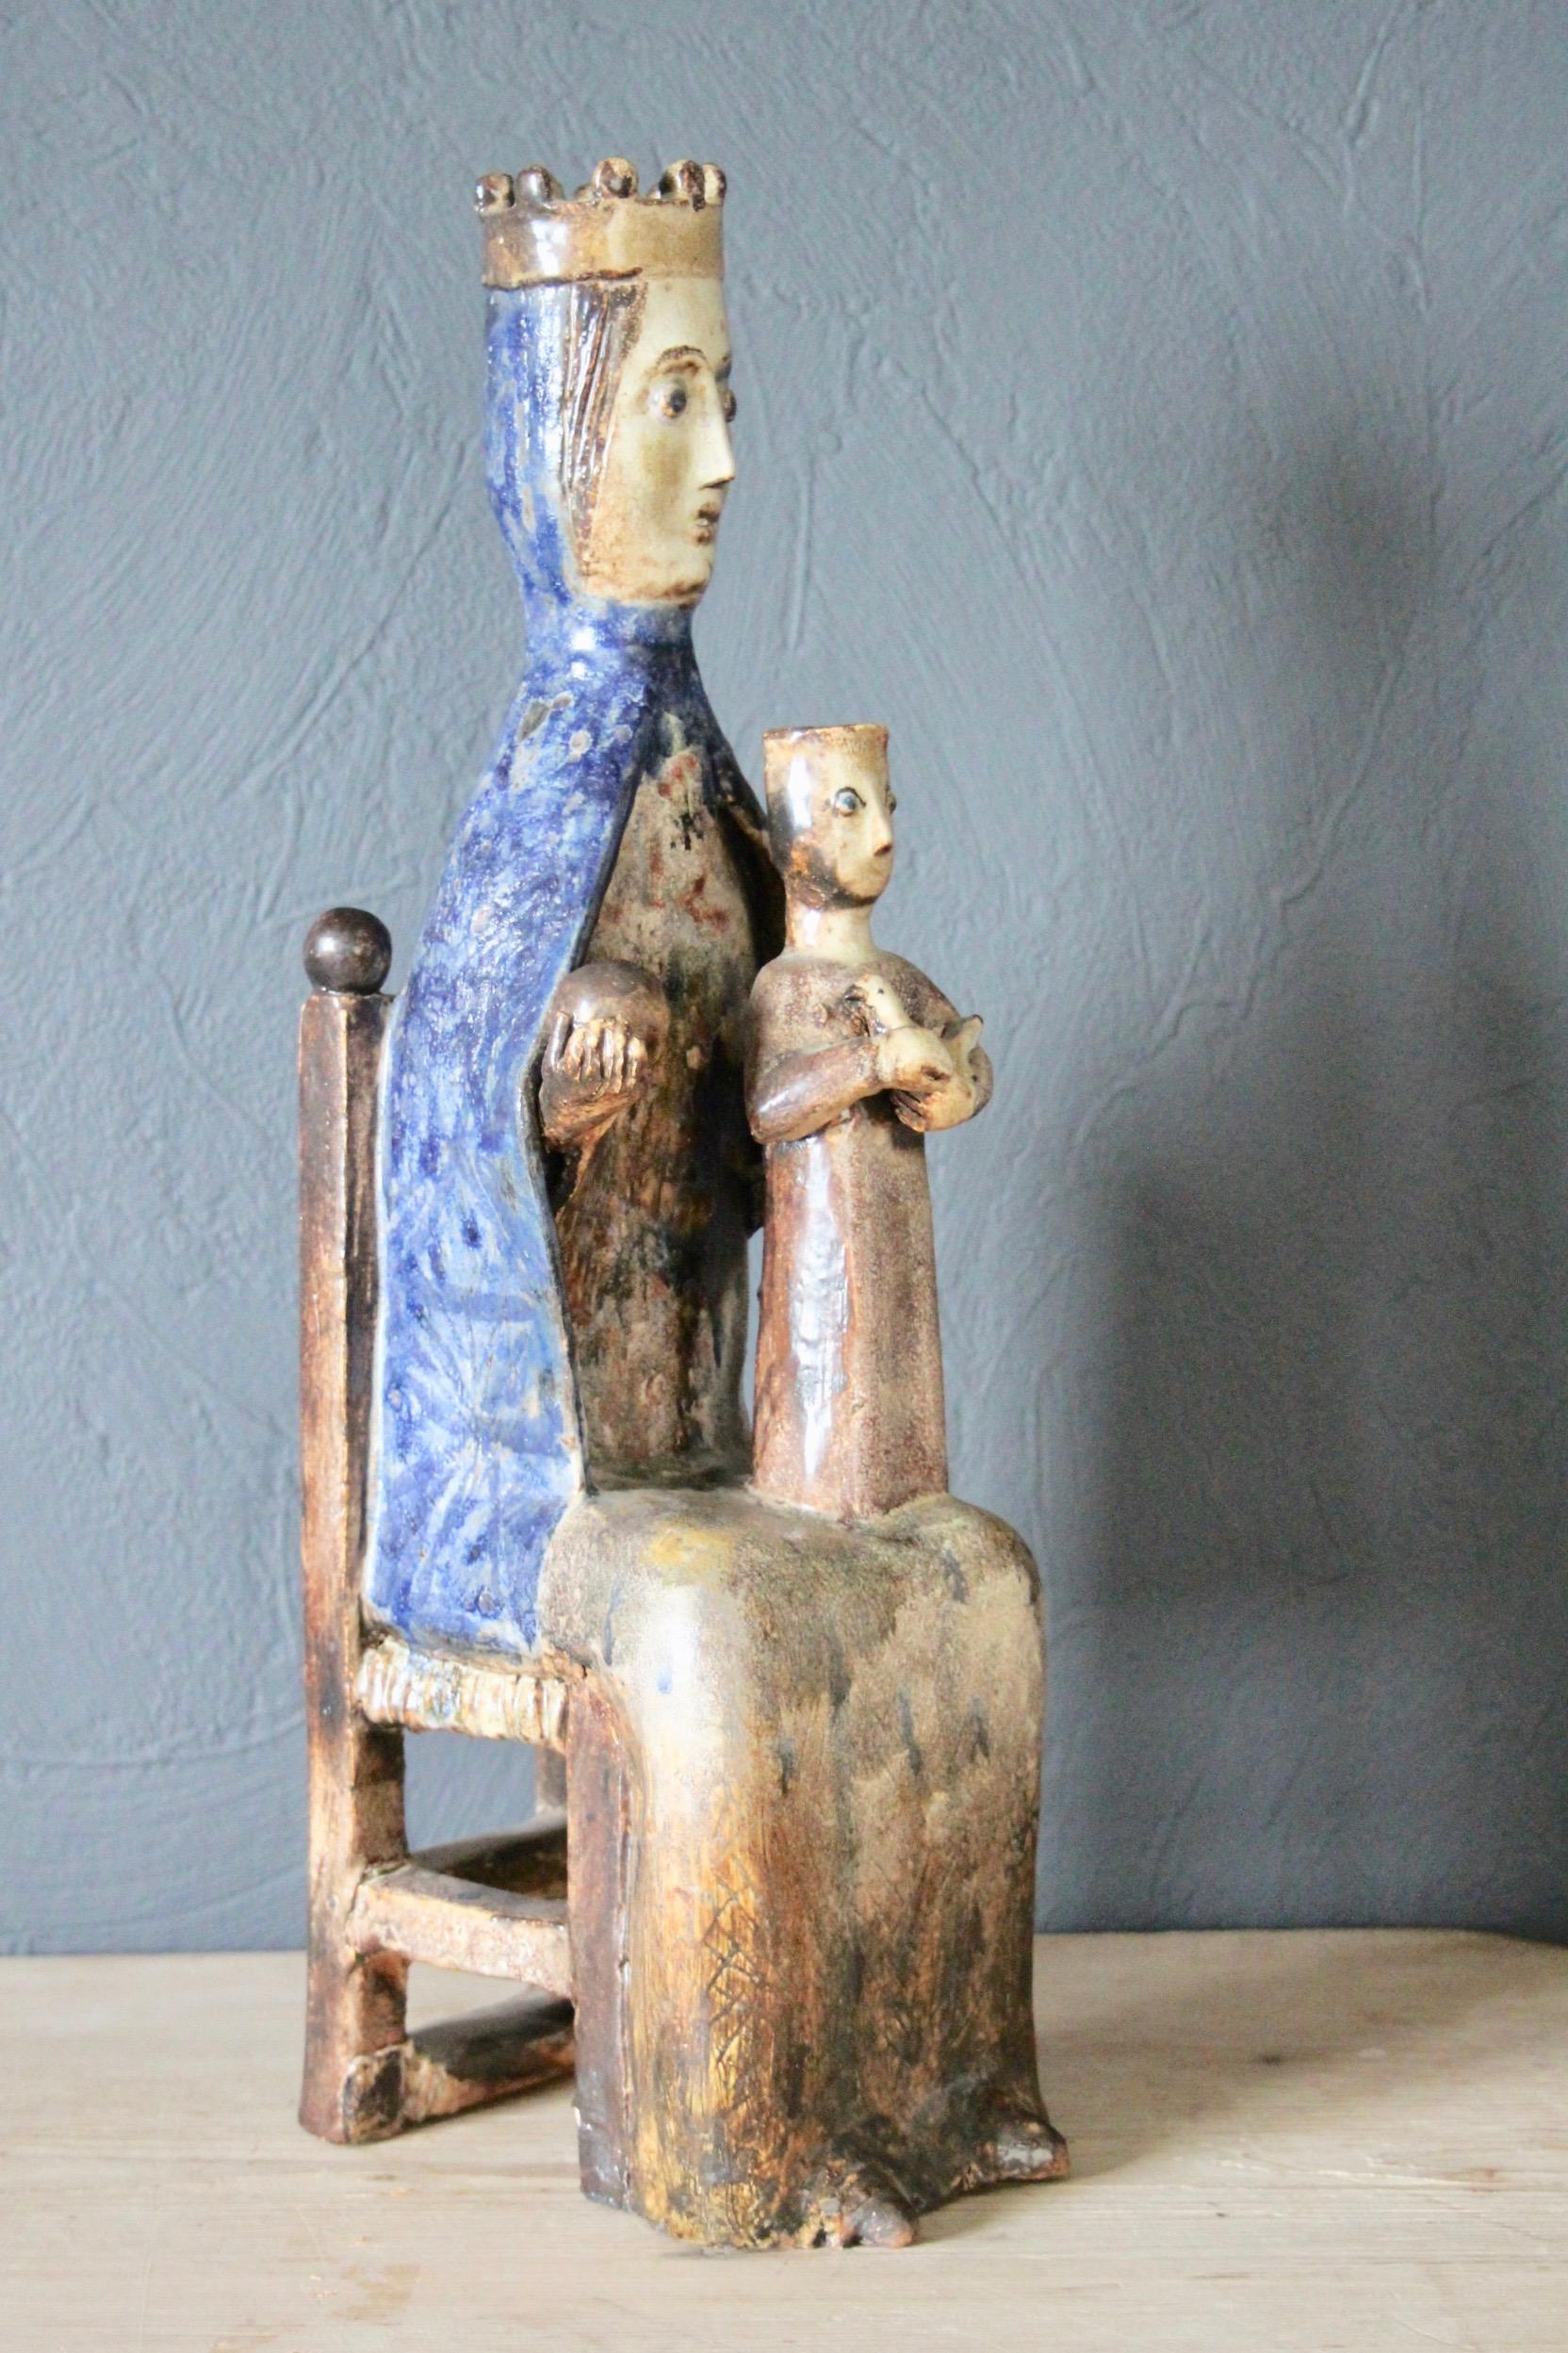 Ceramic virgin with child.